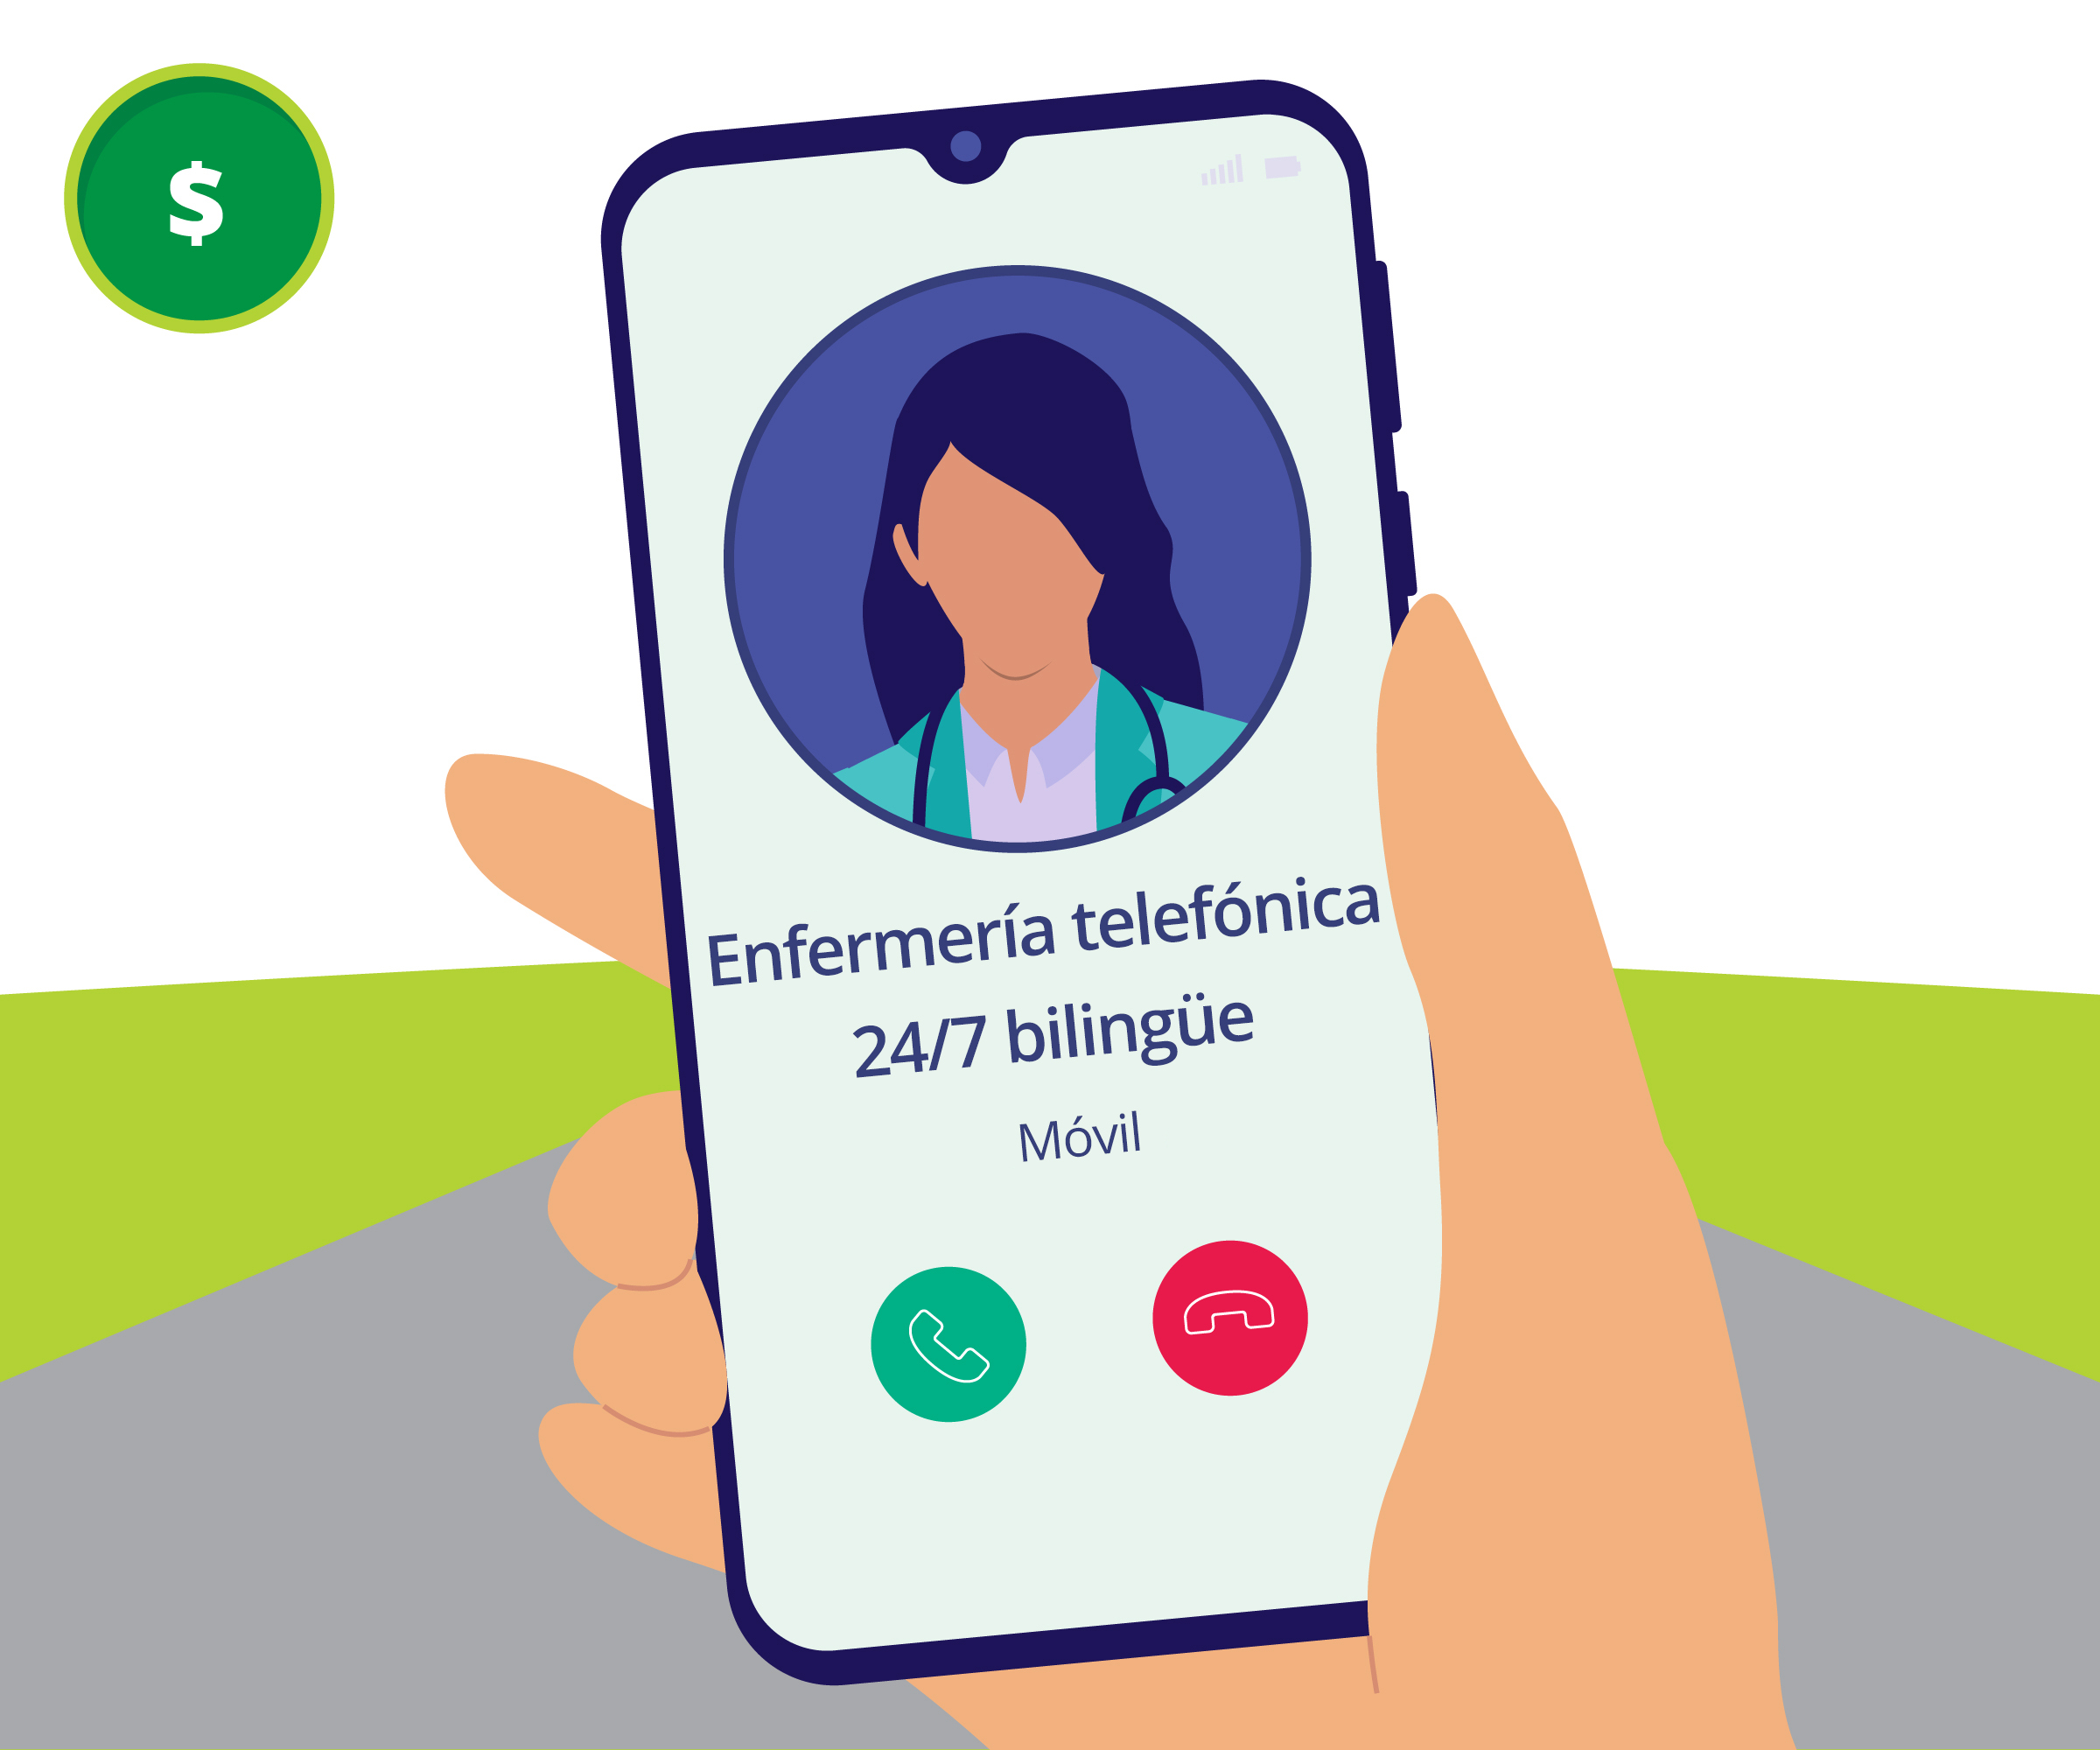 Ilustración de un ícono que muestra una llamada en vivo con la línea de enfermería telefónica 24/7 bilingüe